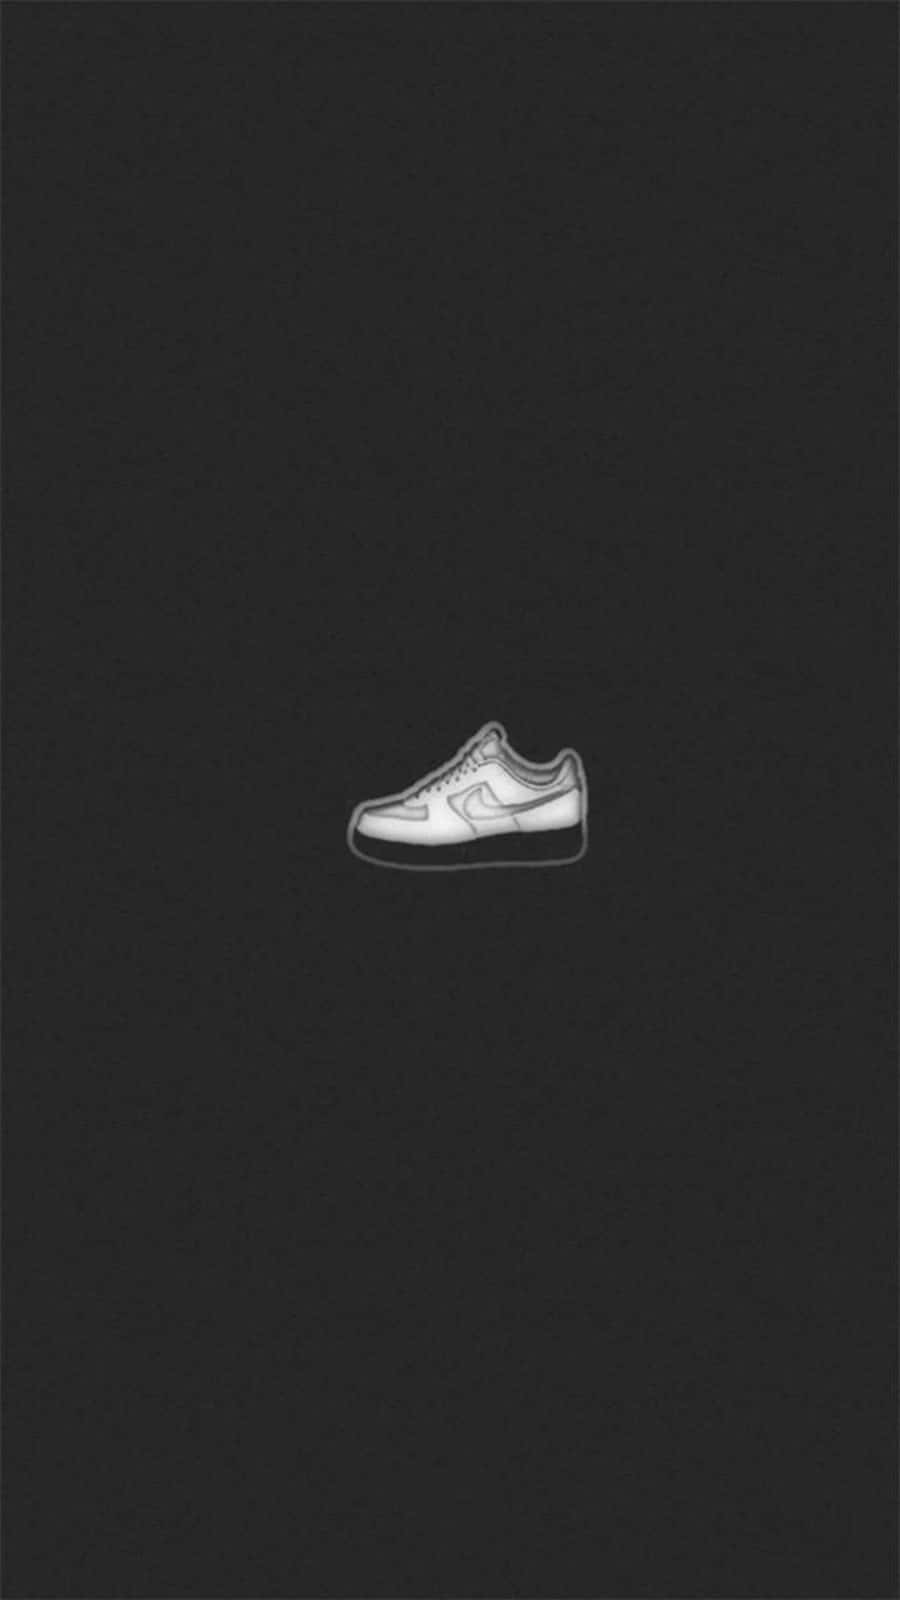 White Nike Af1 Digital Art Wallpaper